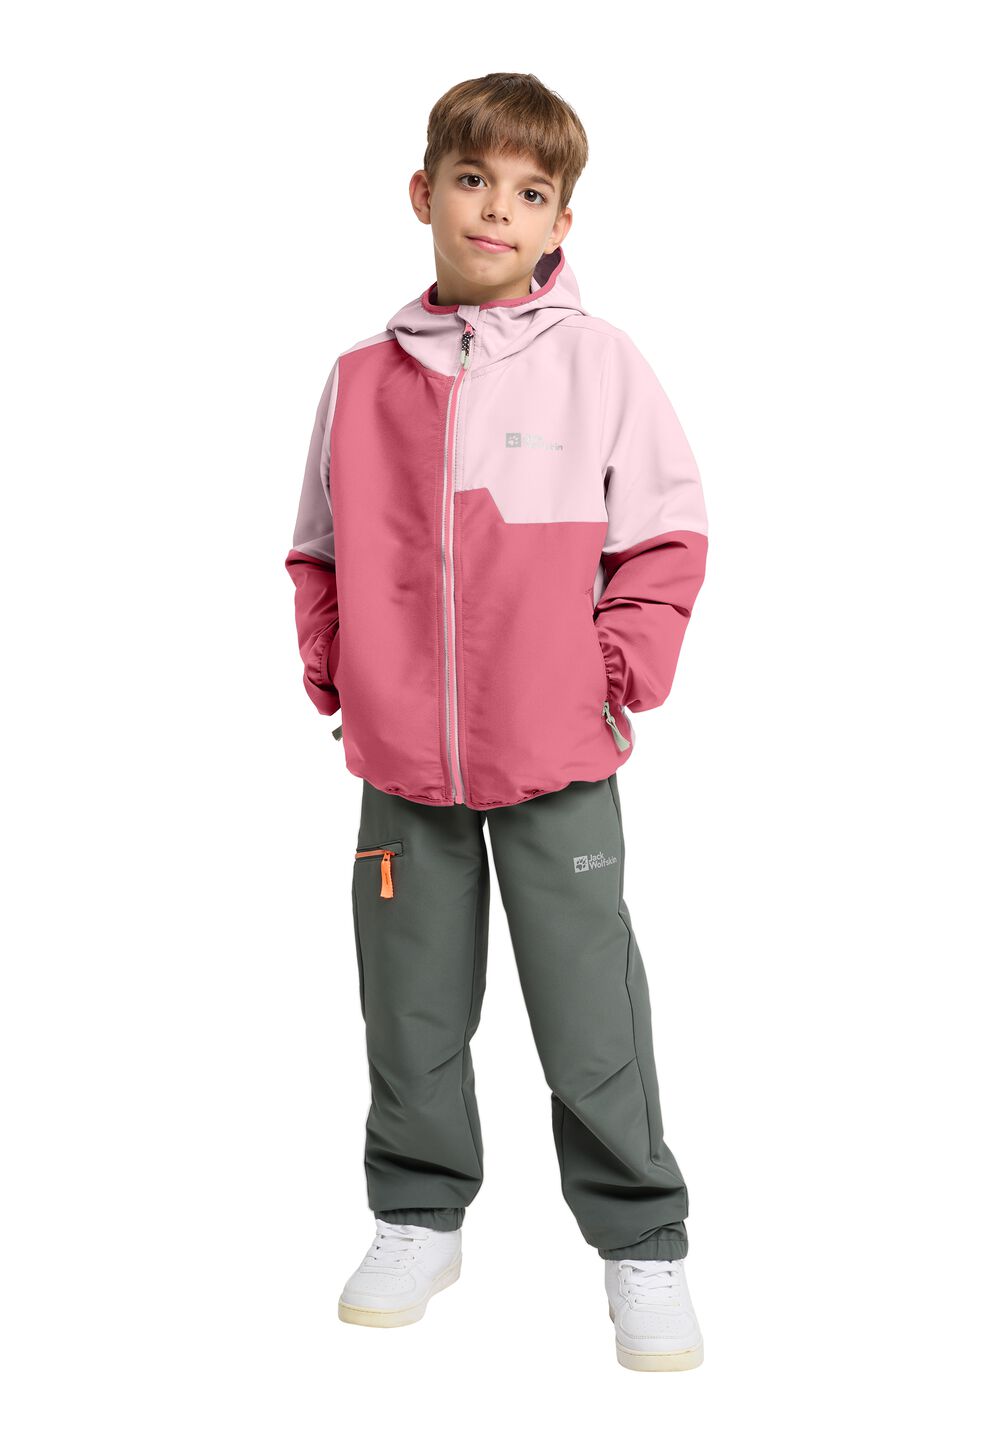 Jack Wolfskin Turbulence Hooded Jacket Kids Softshelljack Kinderen 164 soft pink soft pink